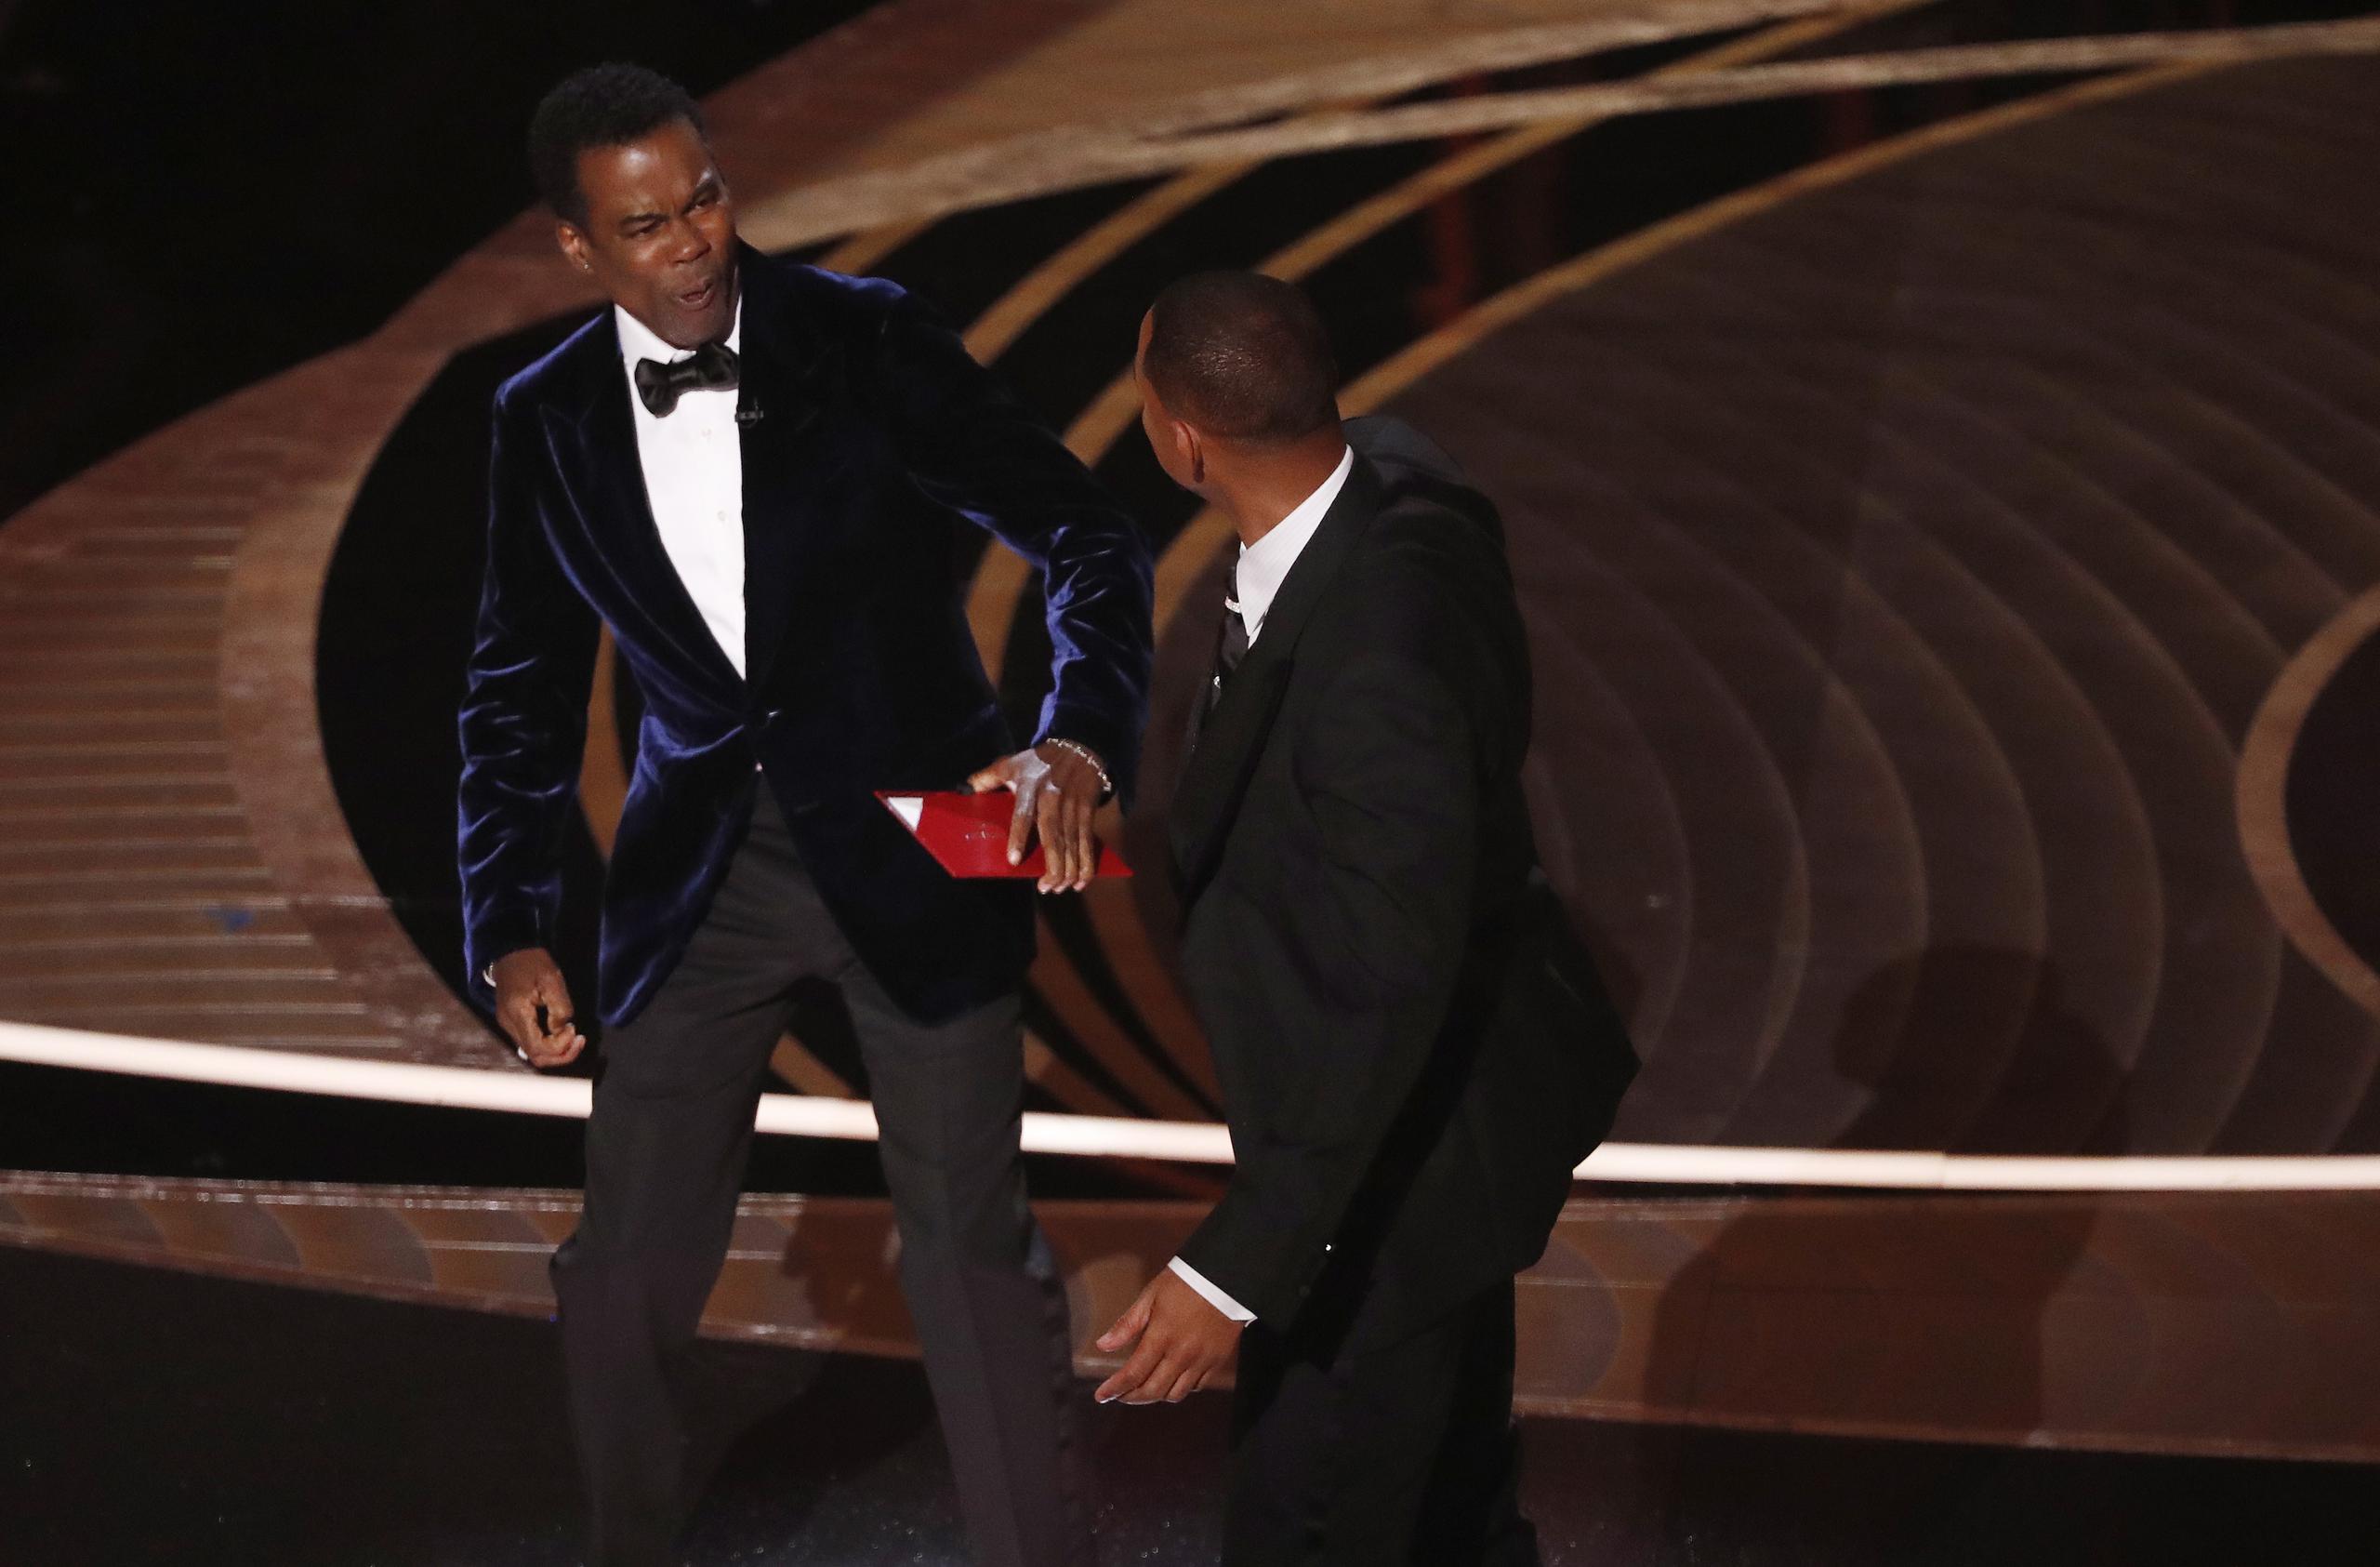 El actor Will Smith le propinó una bofetada a su colega Chris Rock durante los premios Óscar el pasado 27 de marzo de 2022, en Los Ángeles, California.